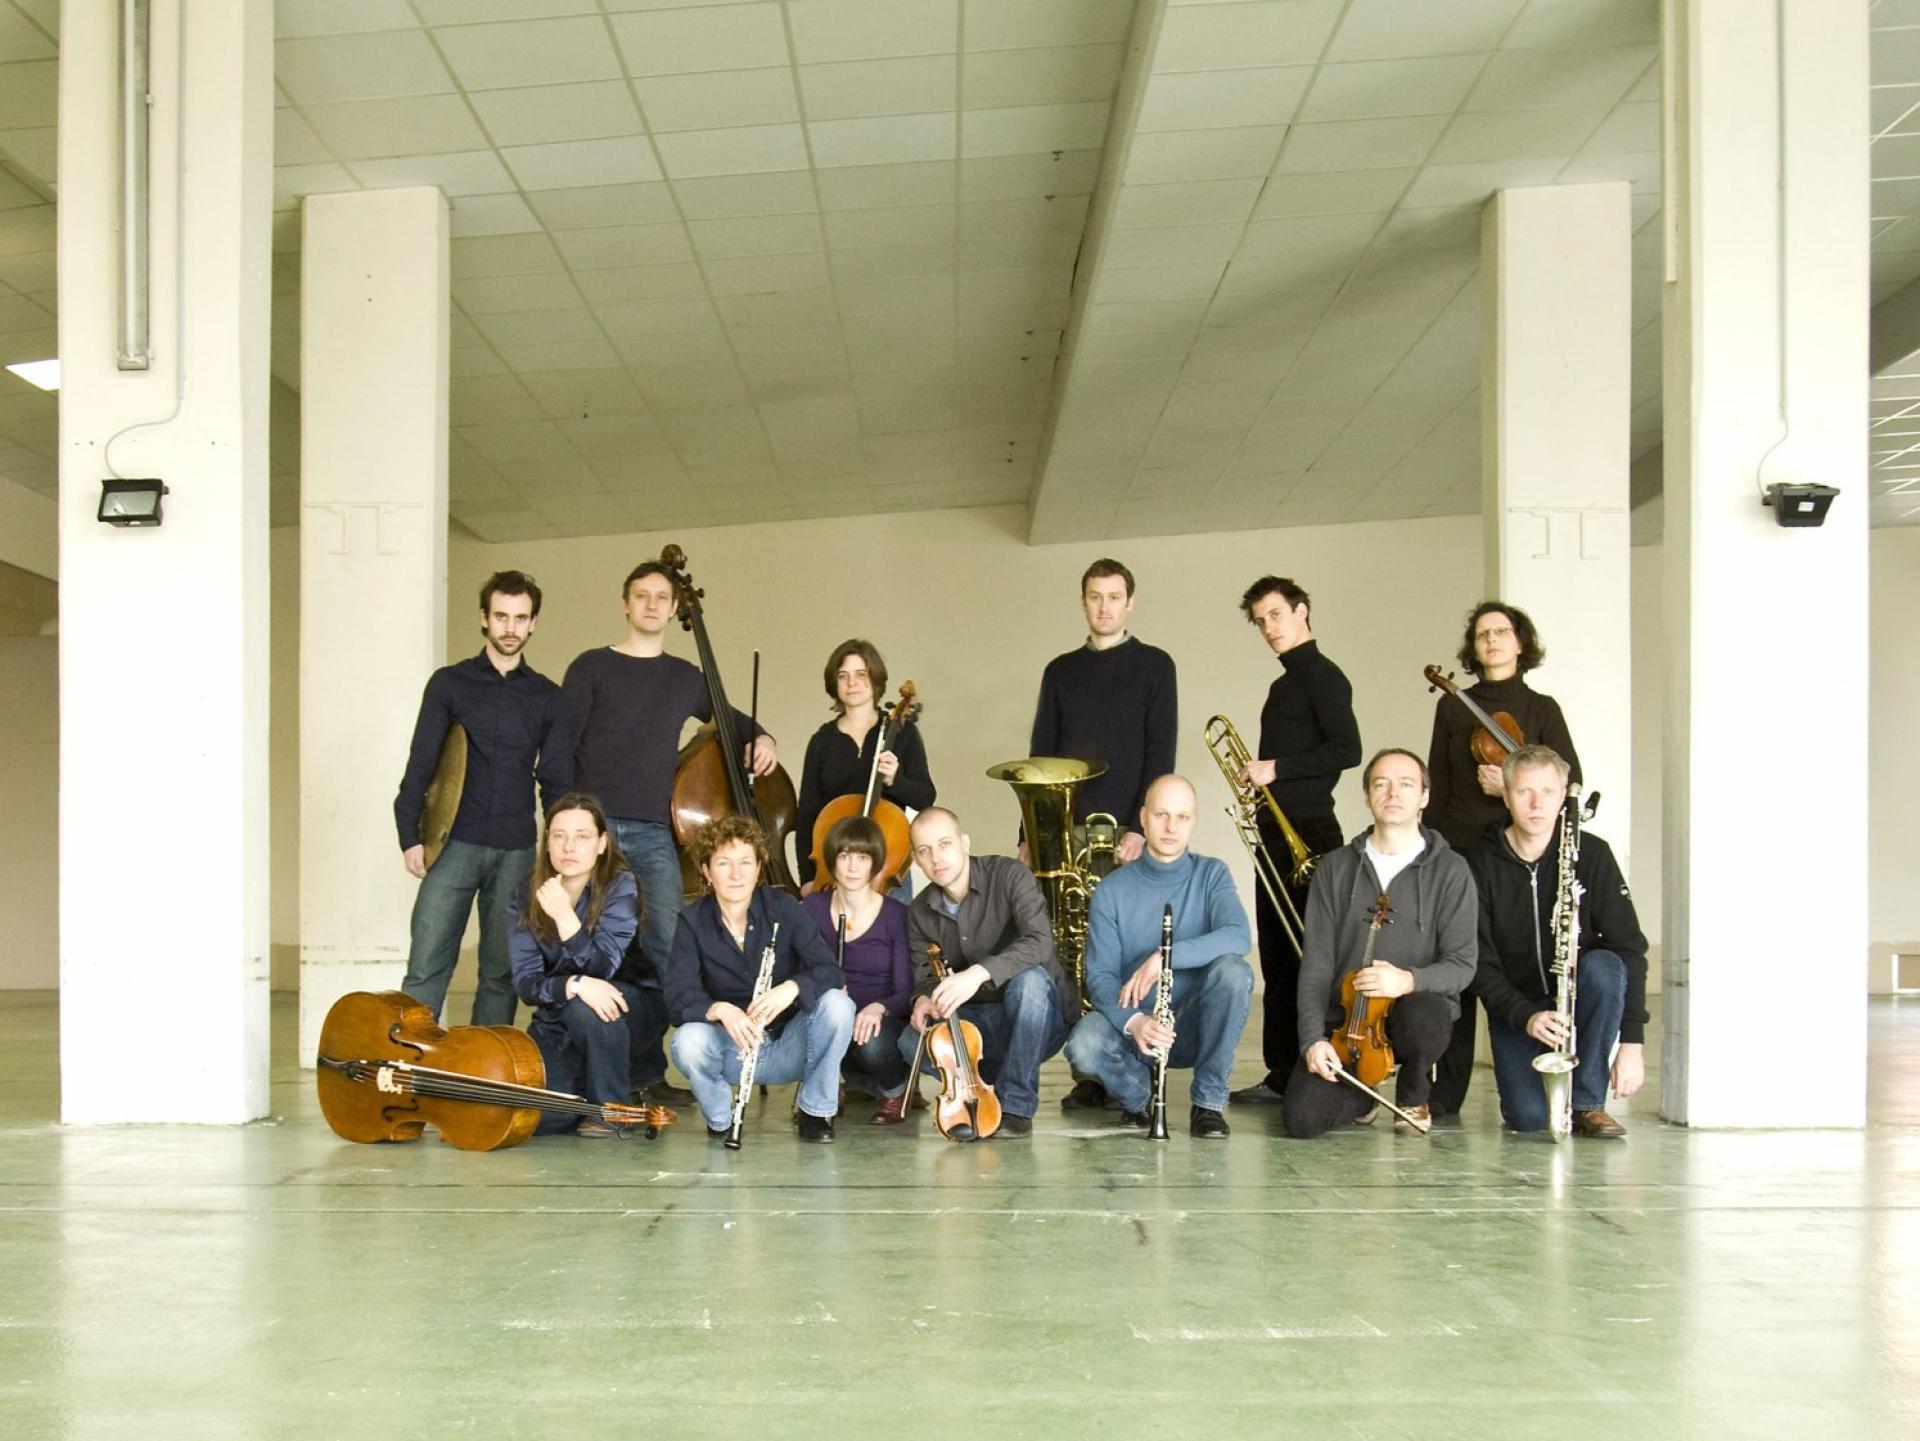 Die Mitglieder des Ensemble KNM in einer Betonhalle, mit ihren Instrumenten.